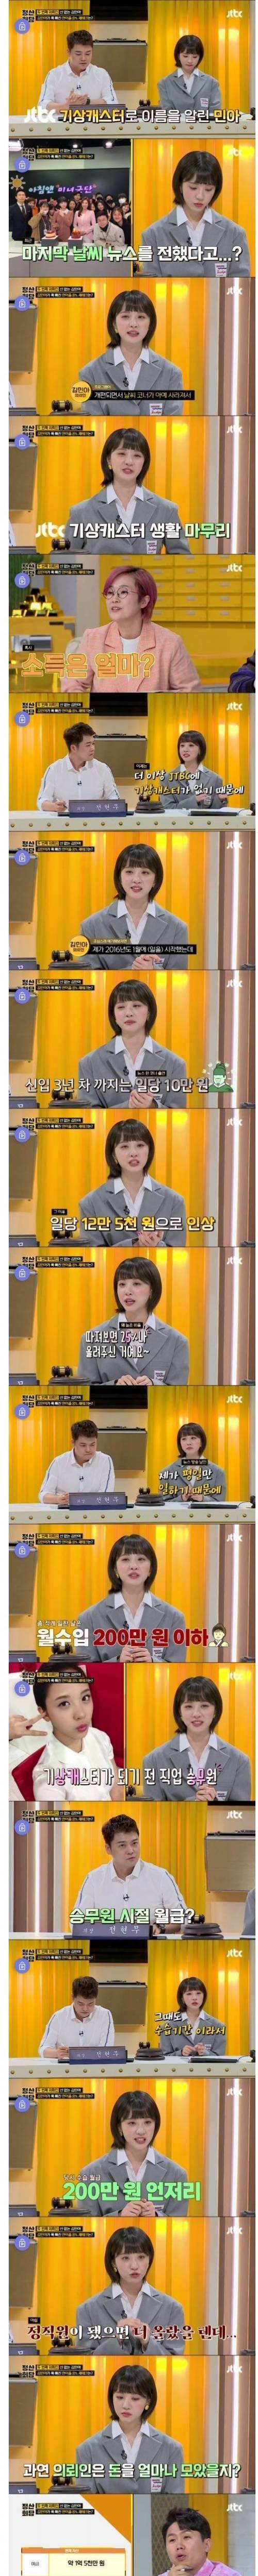 [스압] 김민아가 사회생활 8년간 모은 자산